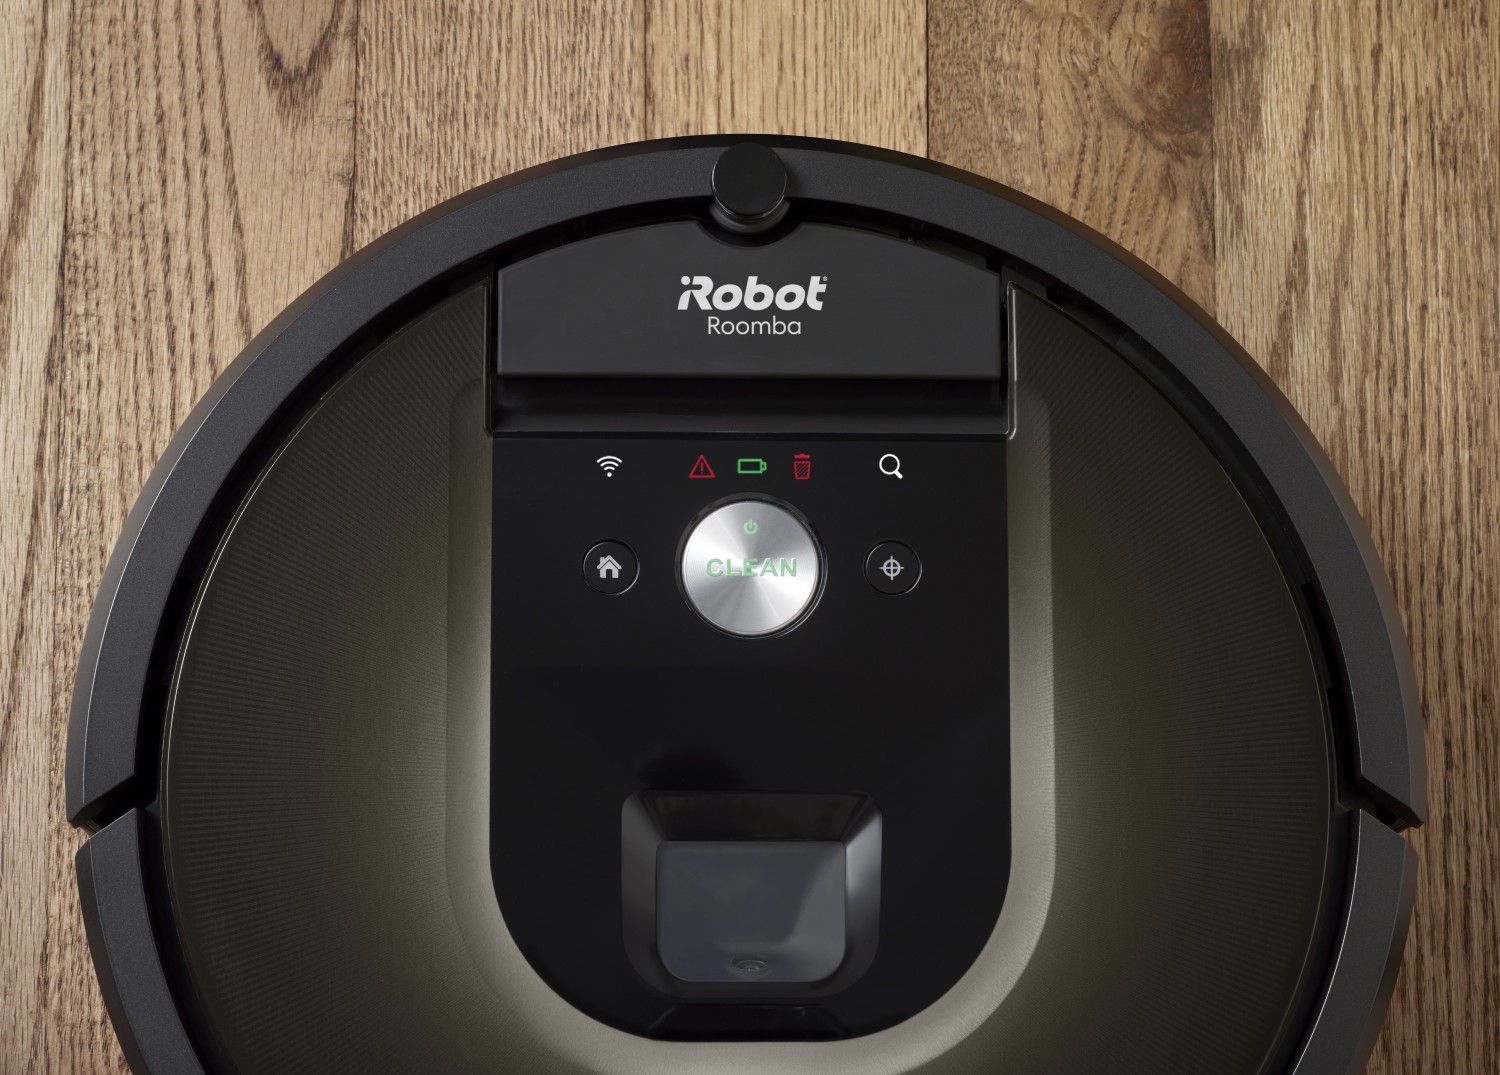 Roomba 980 robotporszívó bemutatása